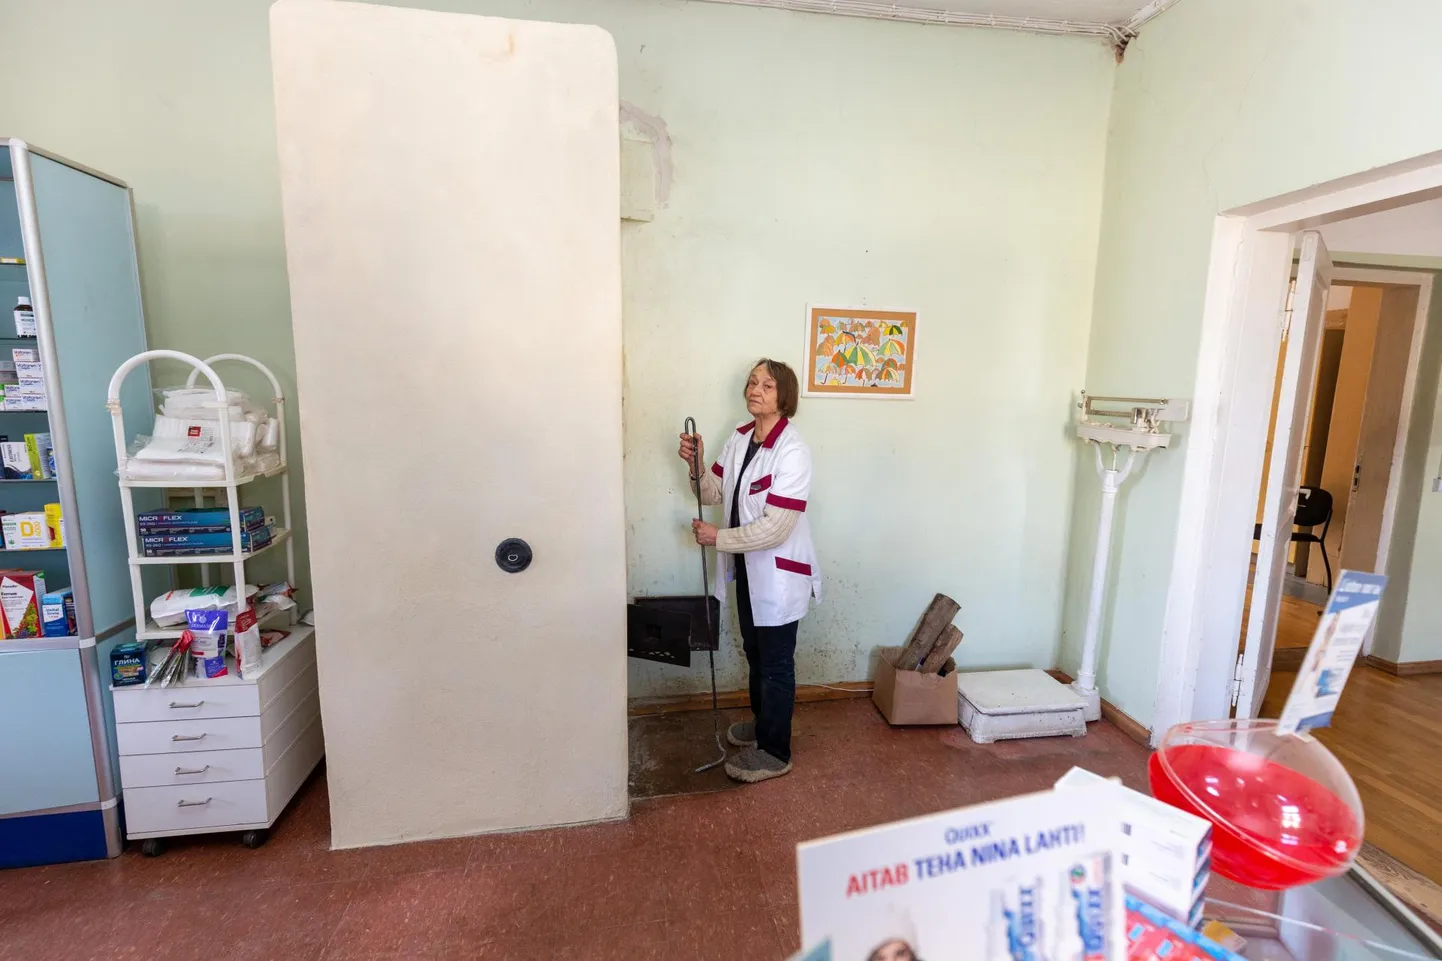 Aprilli algul võis Kõpu apteeker Linda Ehapalu rõõmustada sooja ahju üle. See sai korda tänu kohalikele annetajatele ja pottsepale, kes töötas tasuta.